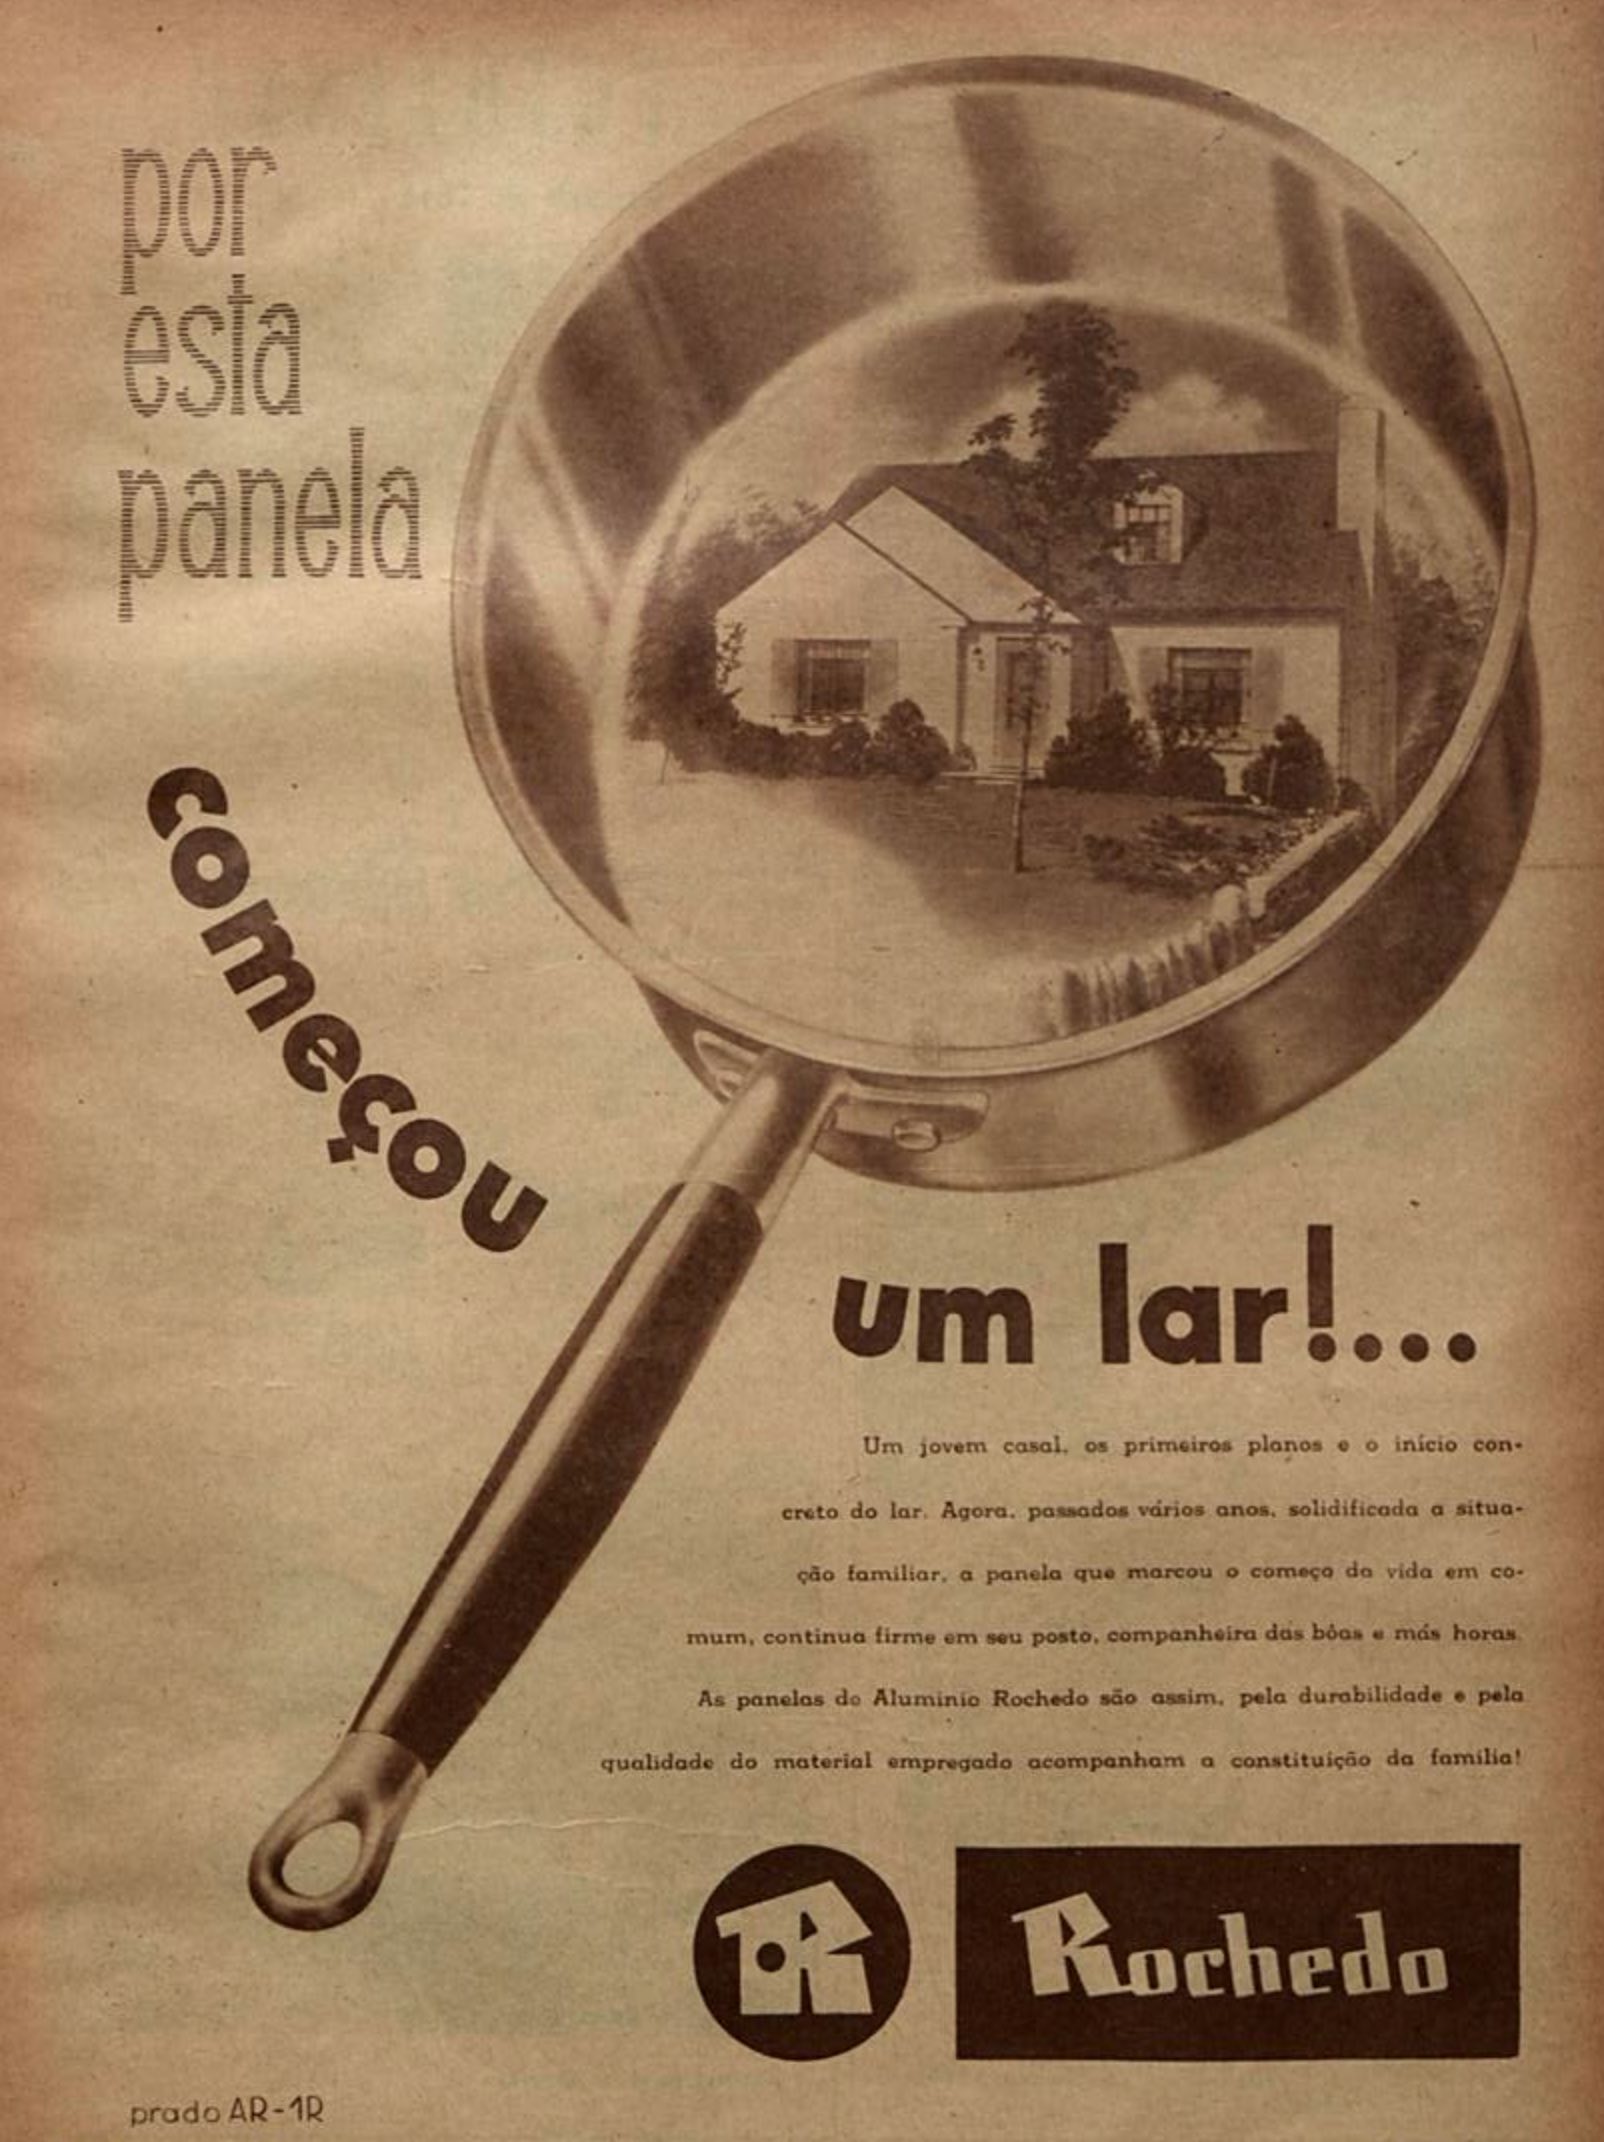 Anúncio veiculado em 1947 promovendo as Panelas da marca Rochedo